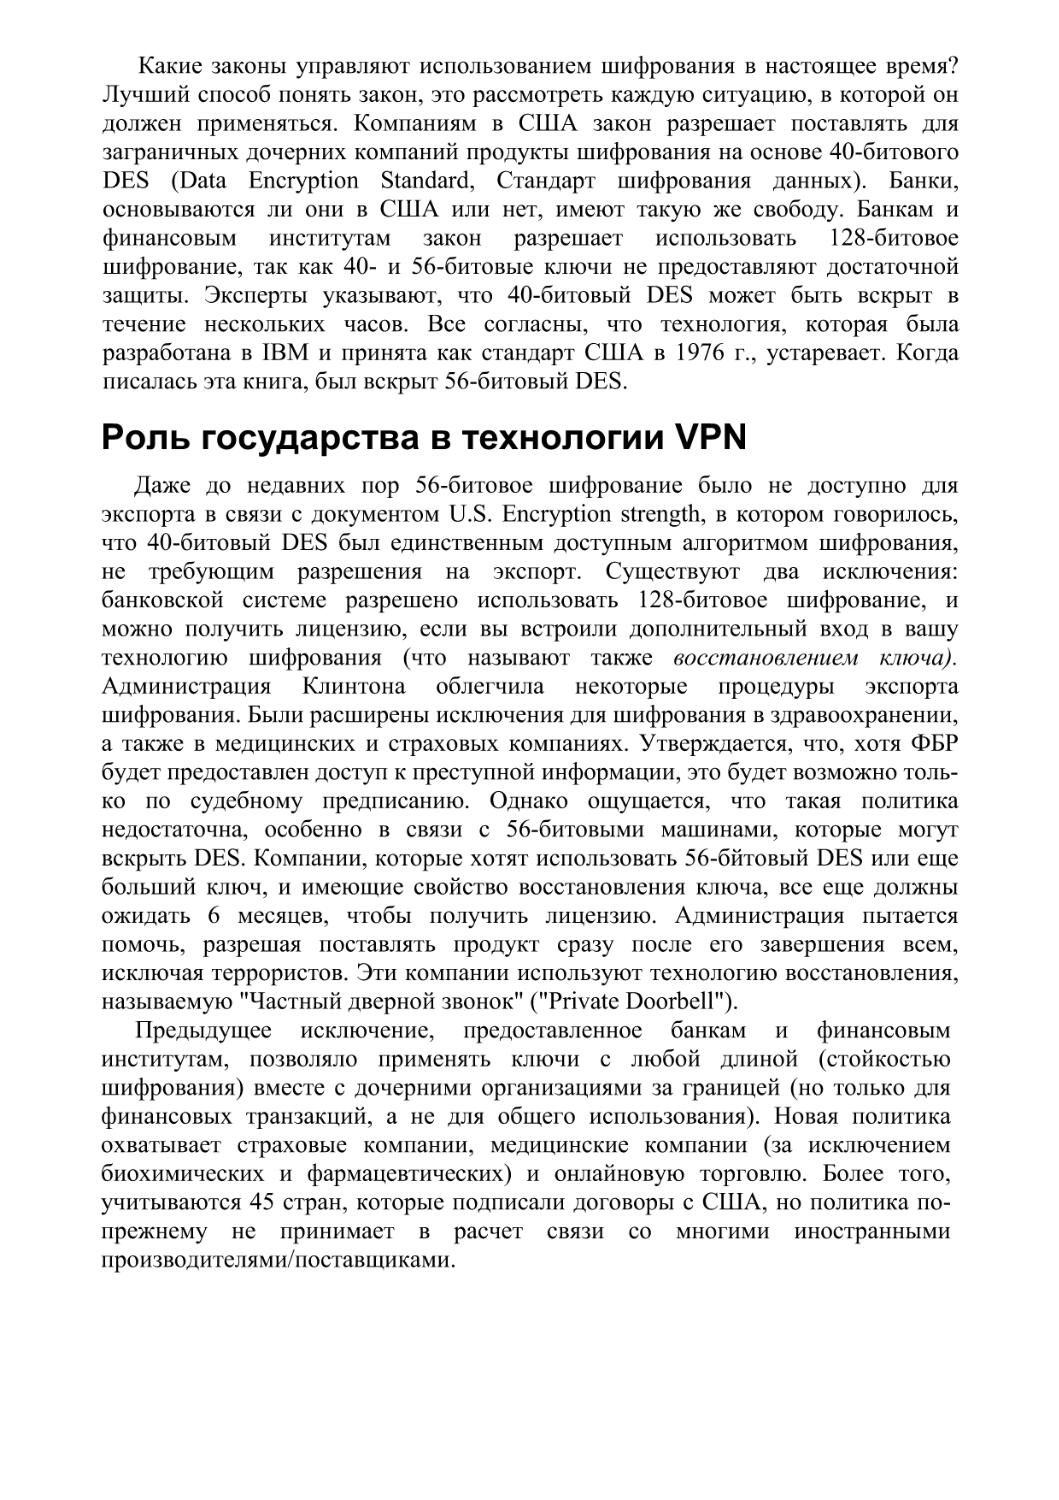 Роль государства в технологии VPN